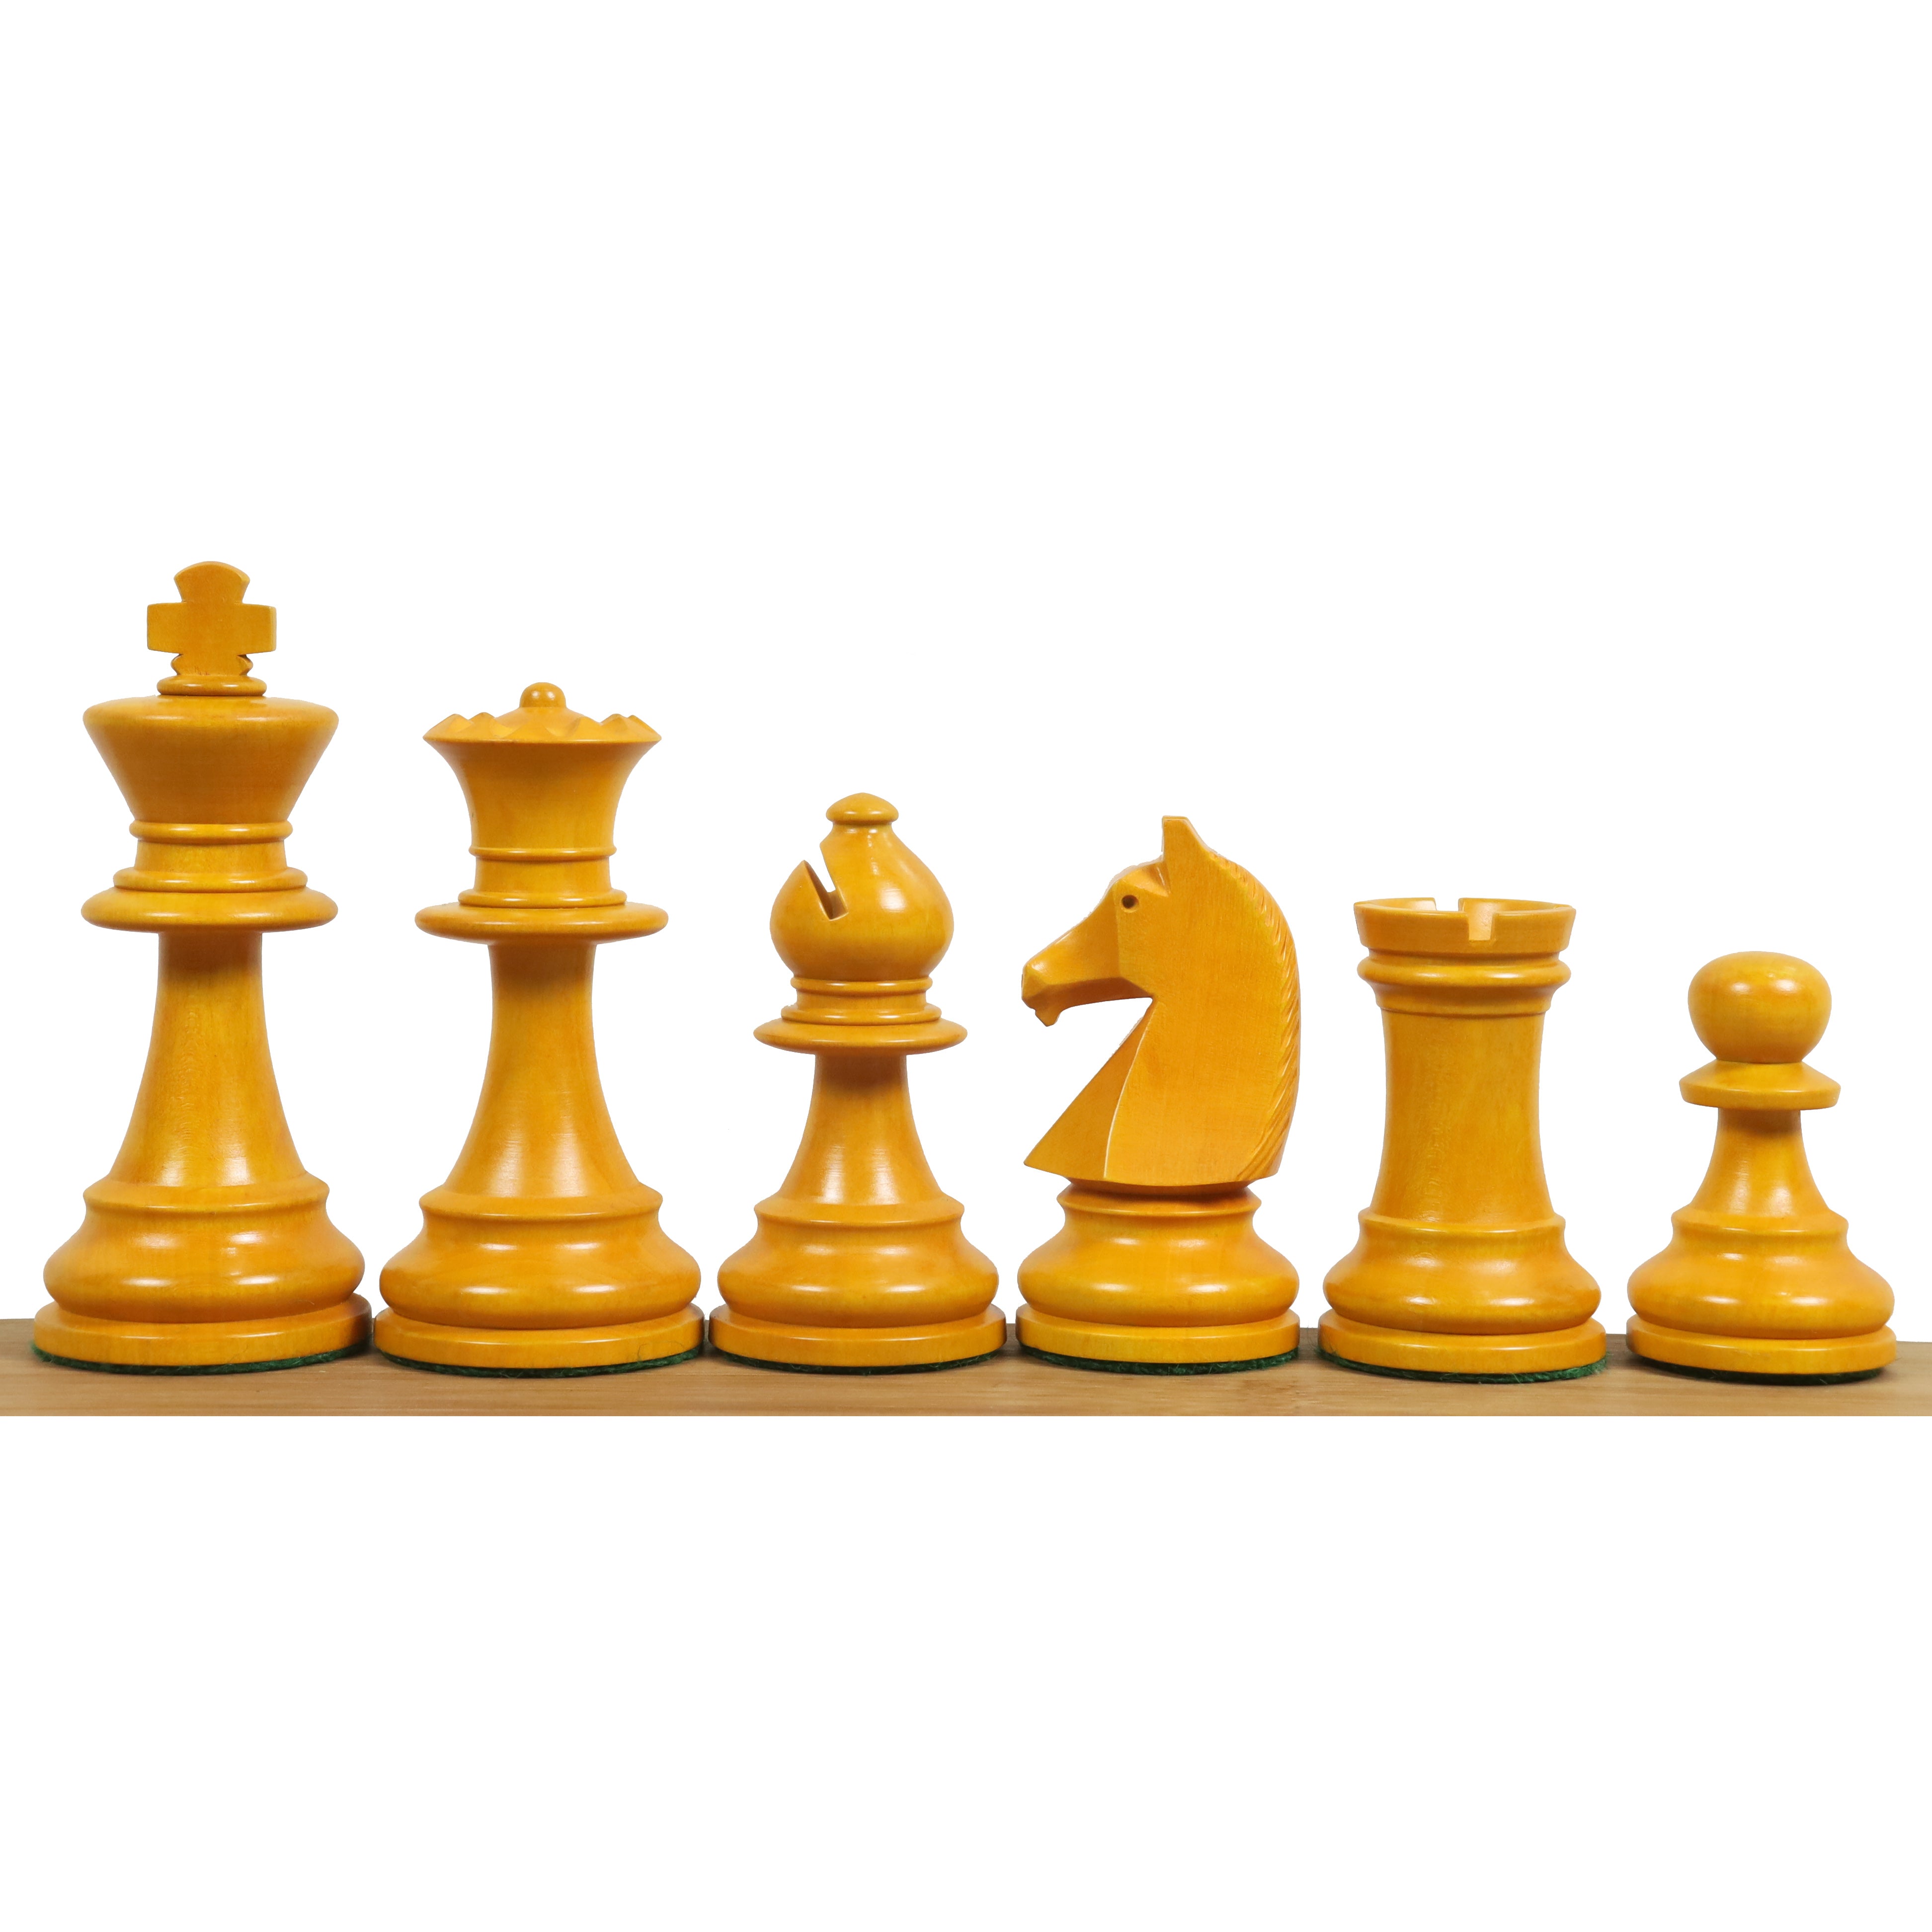 激安販売☆送料無料☆ チェス セット ボード クラシック 木製 チェス盤 チェス駒 テラコッタ戦士 ボードゲーム キング クイーン アンティーク 中国 チェス